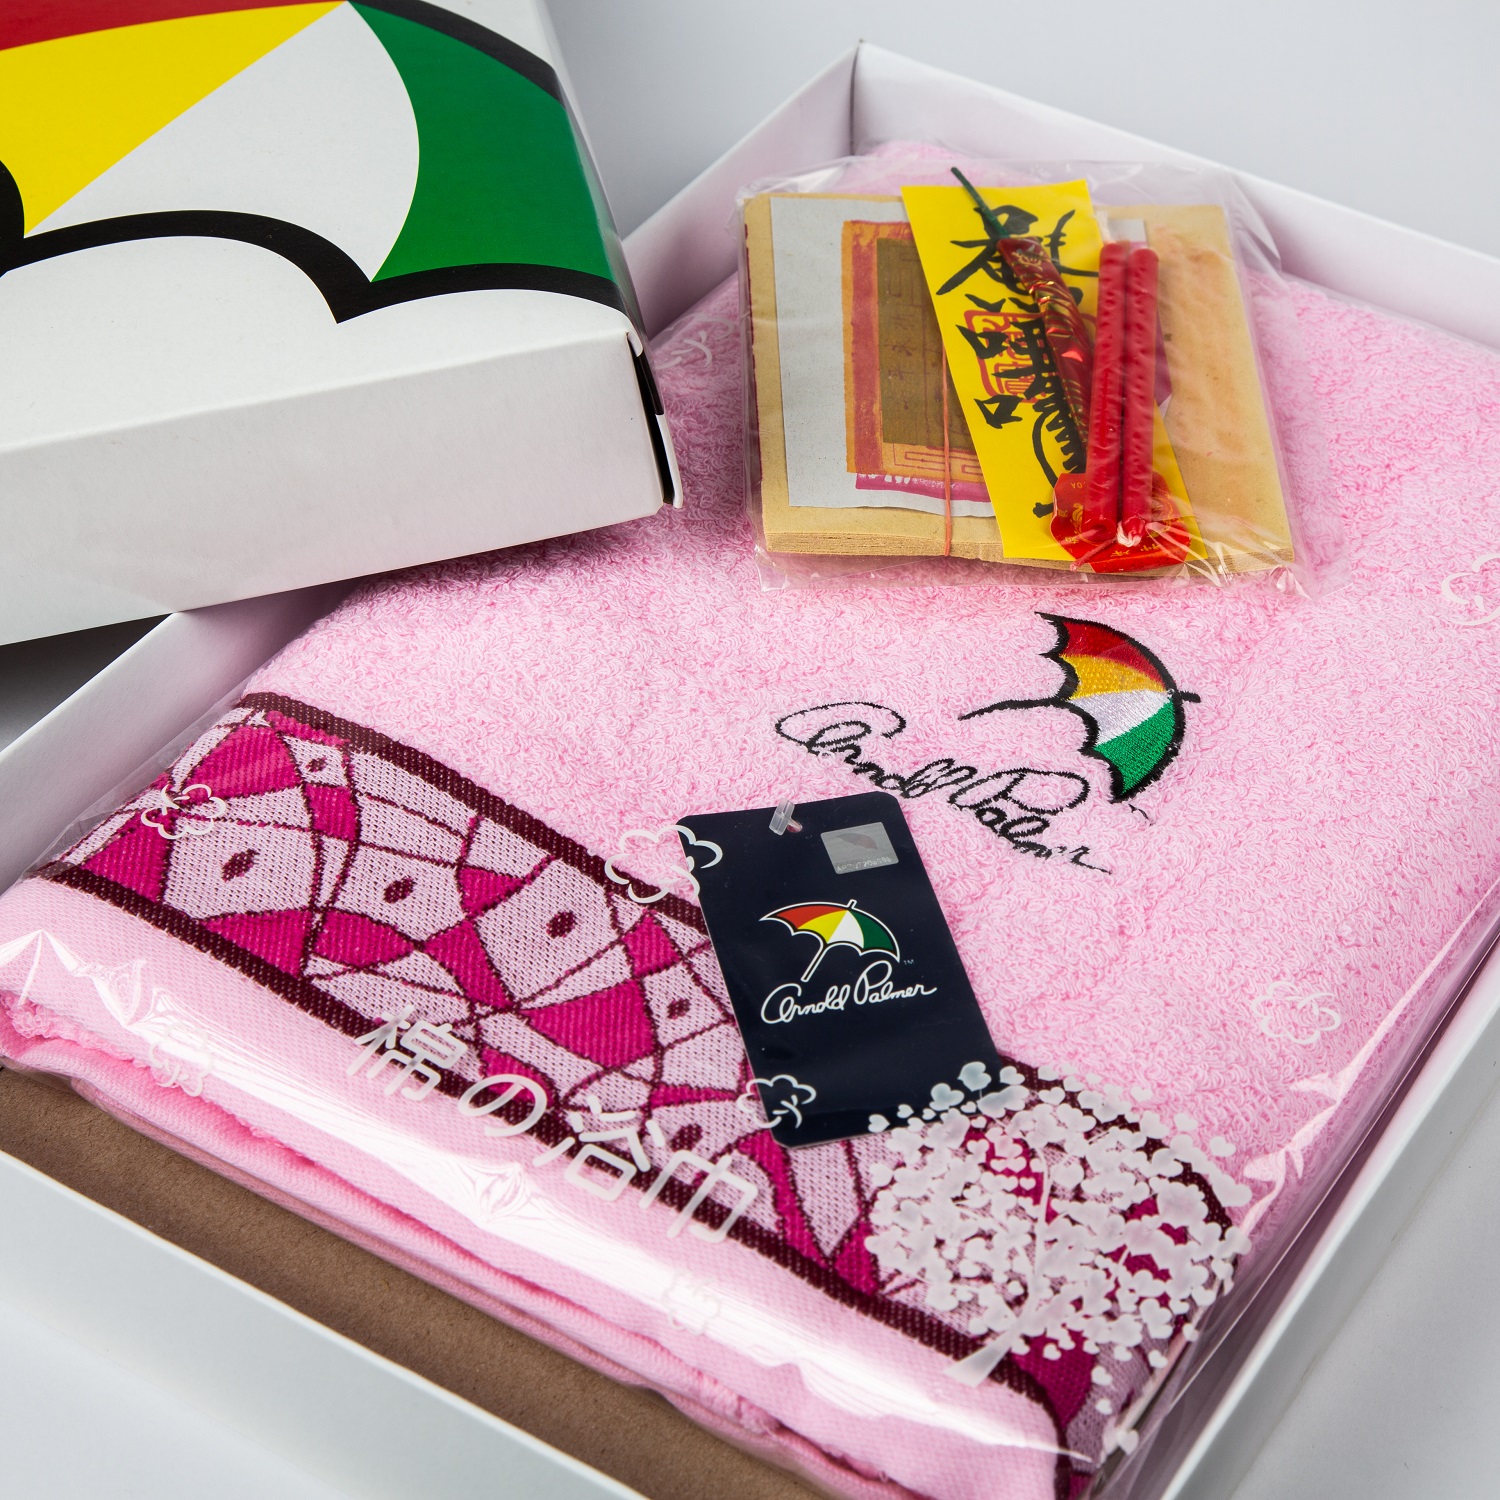 雨傘牌粉色浴巾禮盒